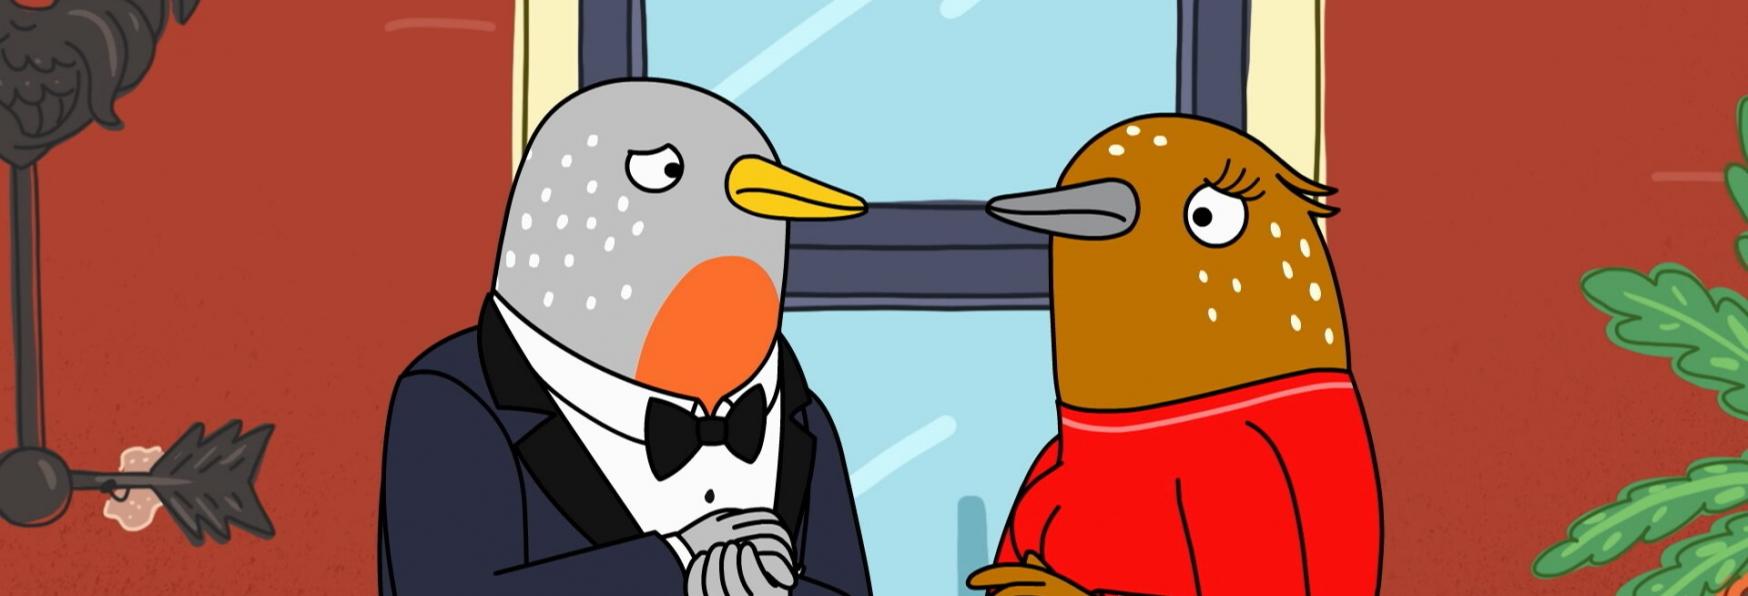 Tuca & Bertie 3 non ci sarà! Cancellata la Serie TV Animata di Adult Swim